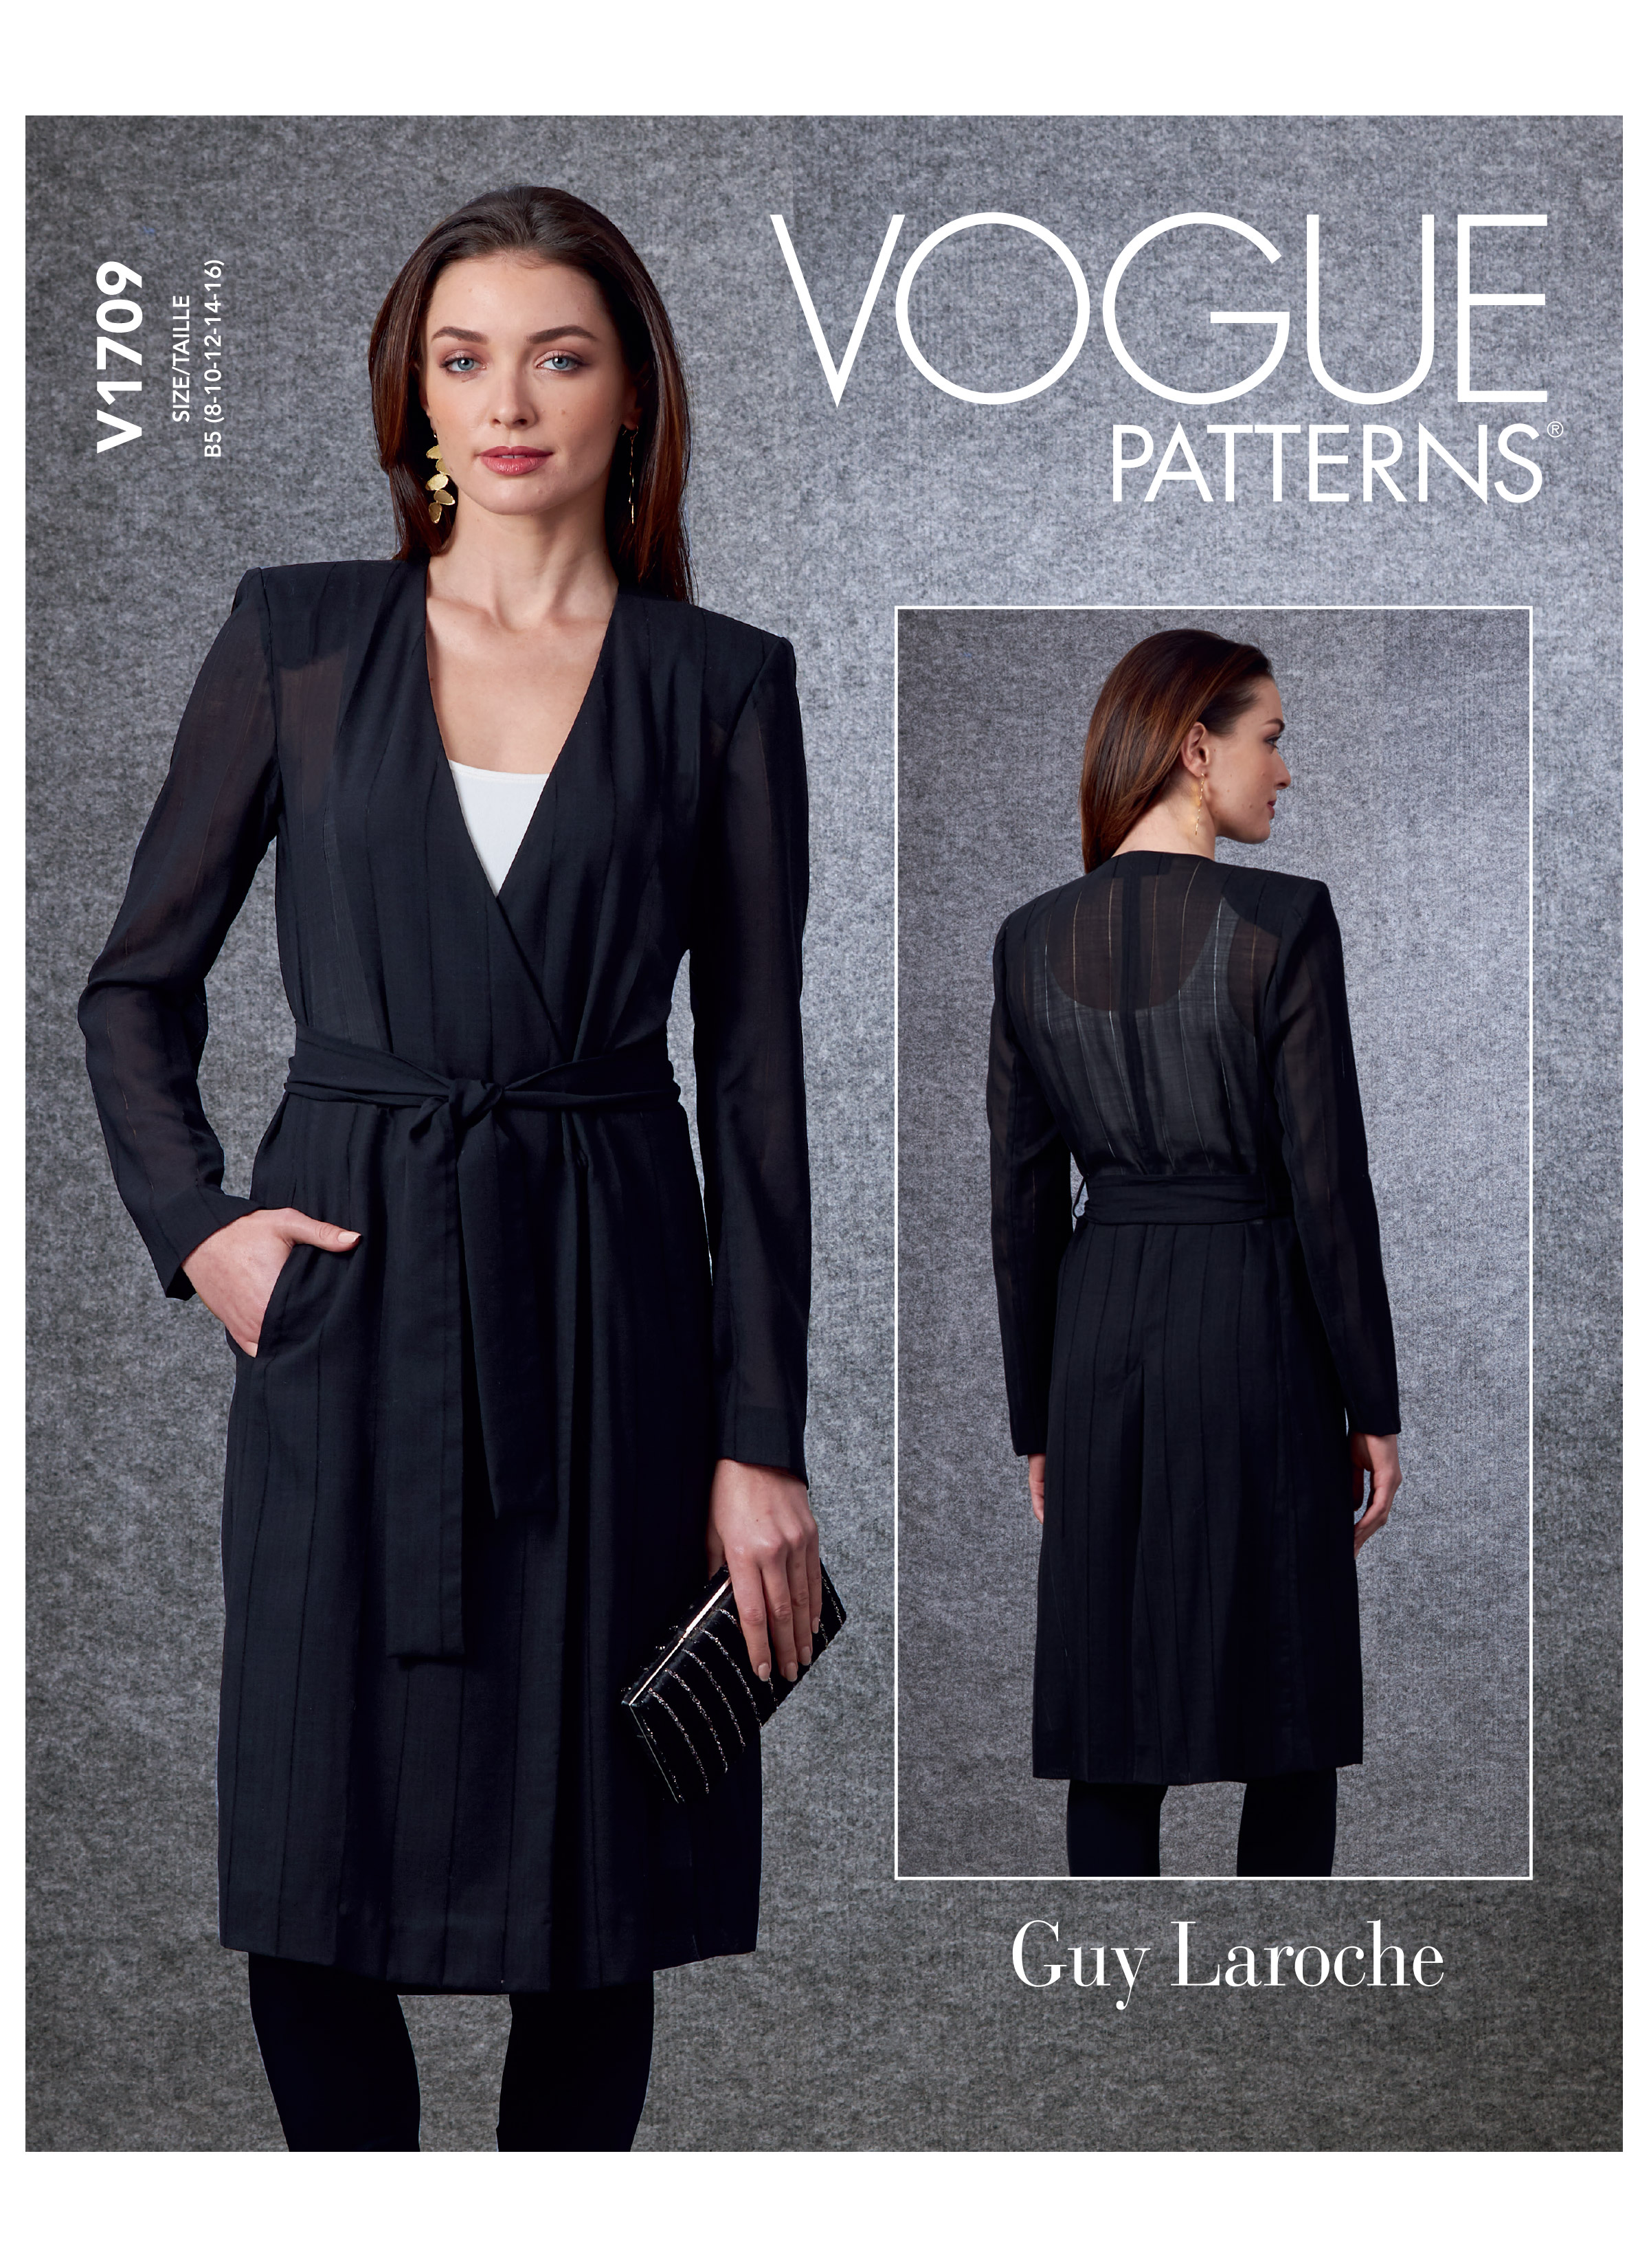 Vogue Pattern 2668 Guy Laroche Pantsuit Jacket and Pants Misses size 14 16  18